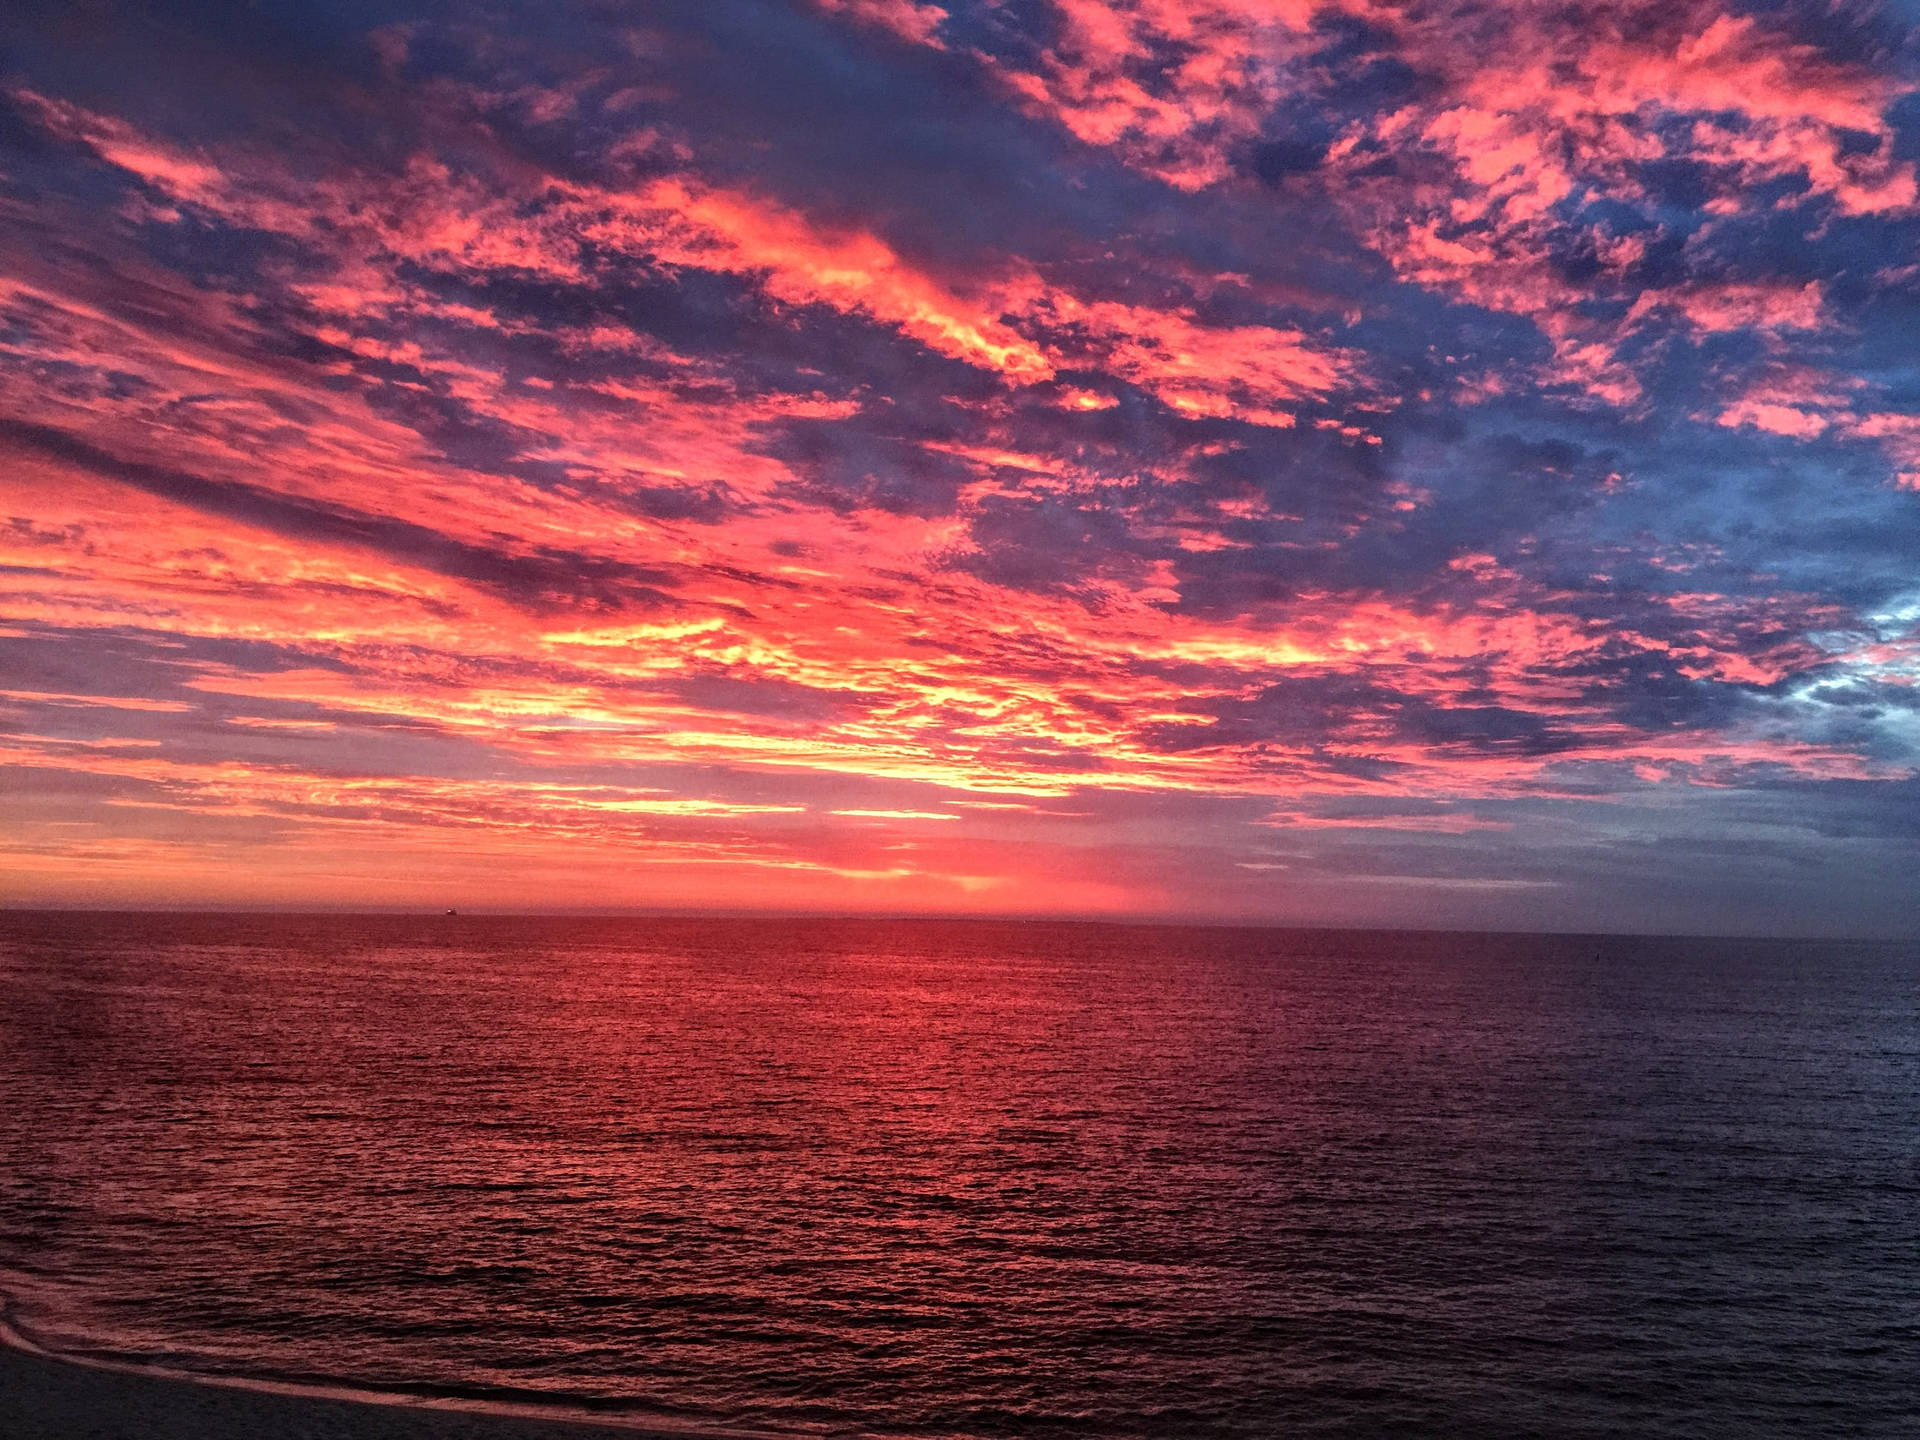 Perth Beautiful Sunset Background